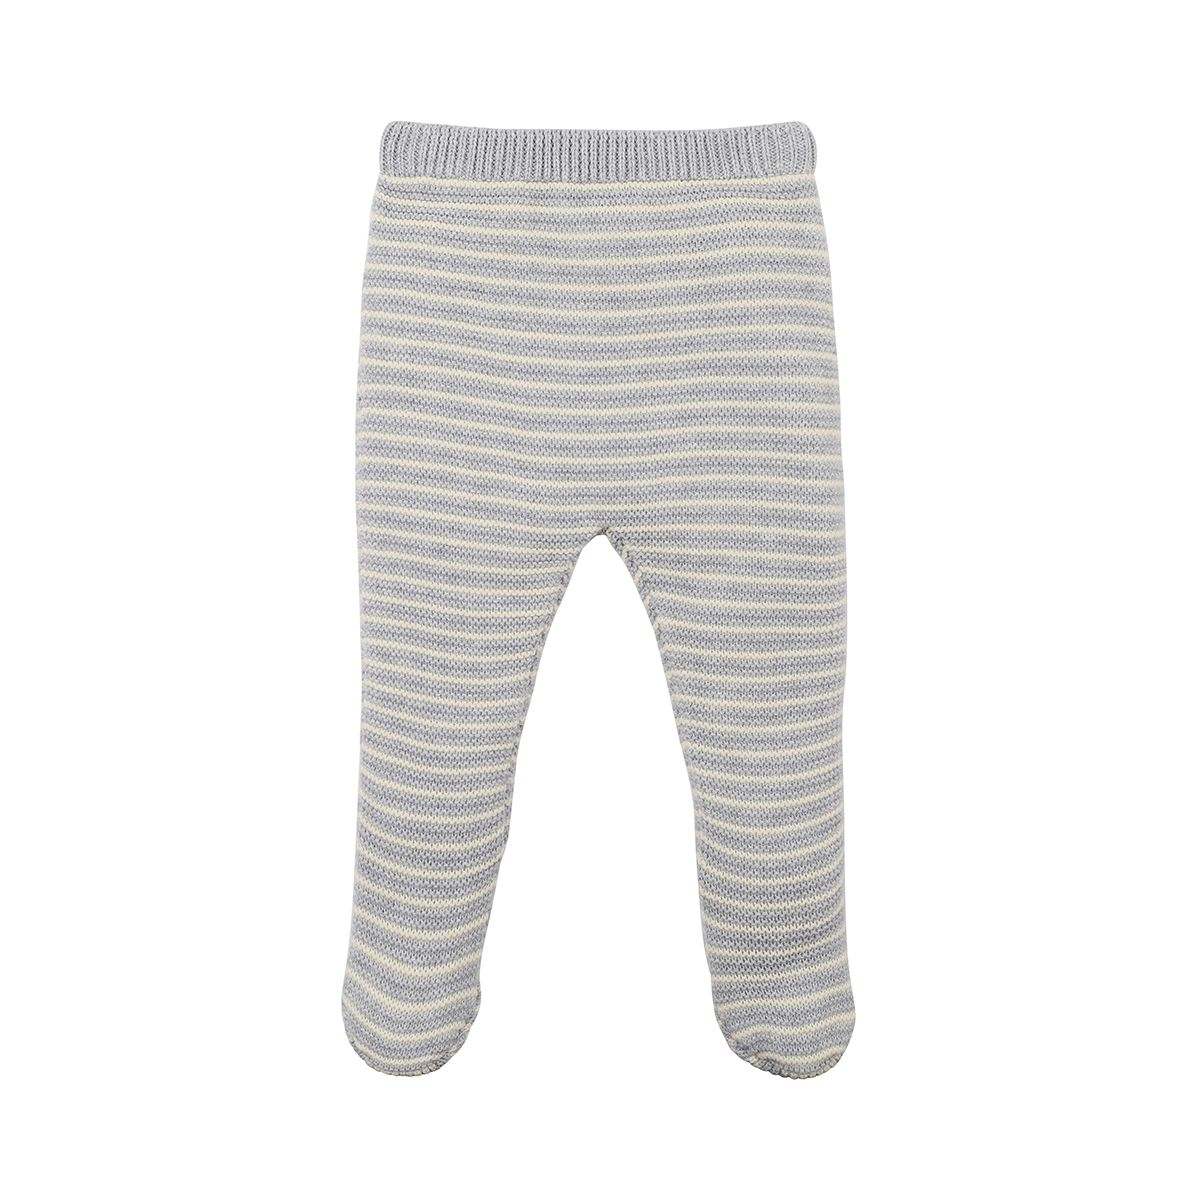 Striped leggings-plain knit – Woollywhotknots